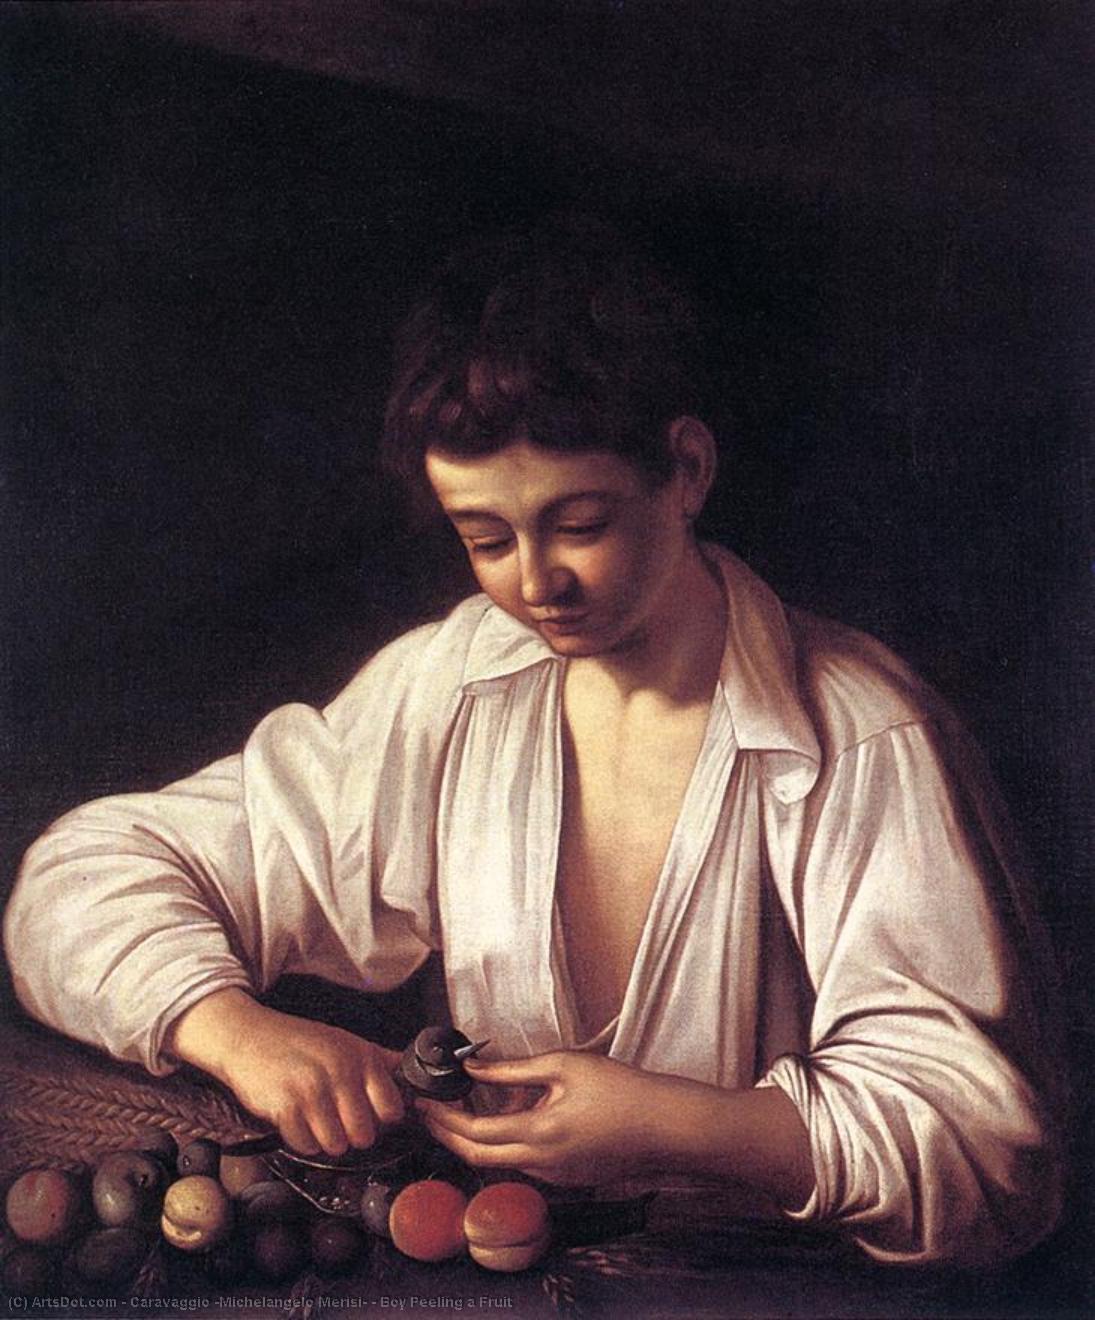 WikiOO.org - Enciclopédia das Belas Artes - Pintura, Arte por Caravaggio (Michelangelo Merisi) - Boy Peeling a Fruit